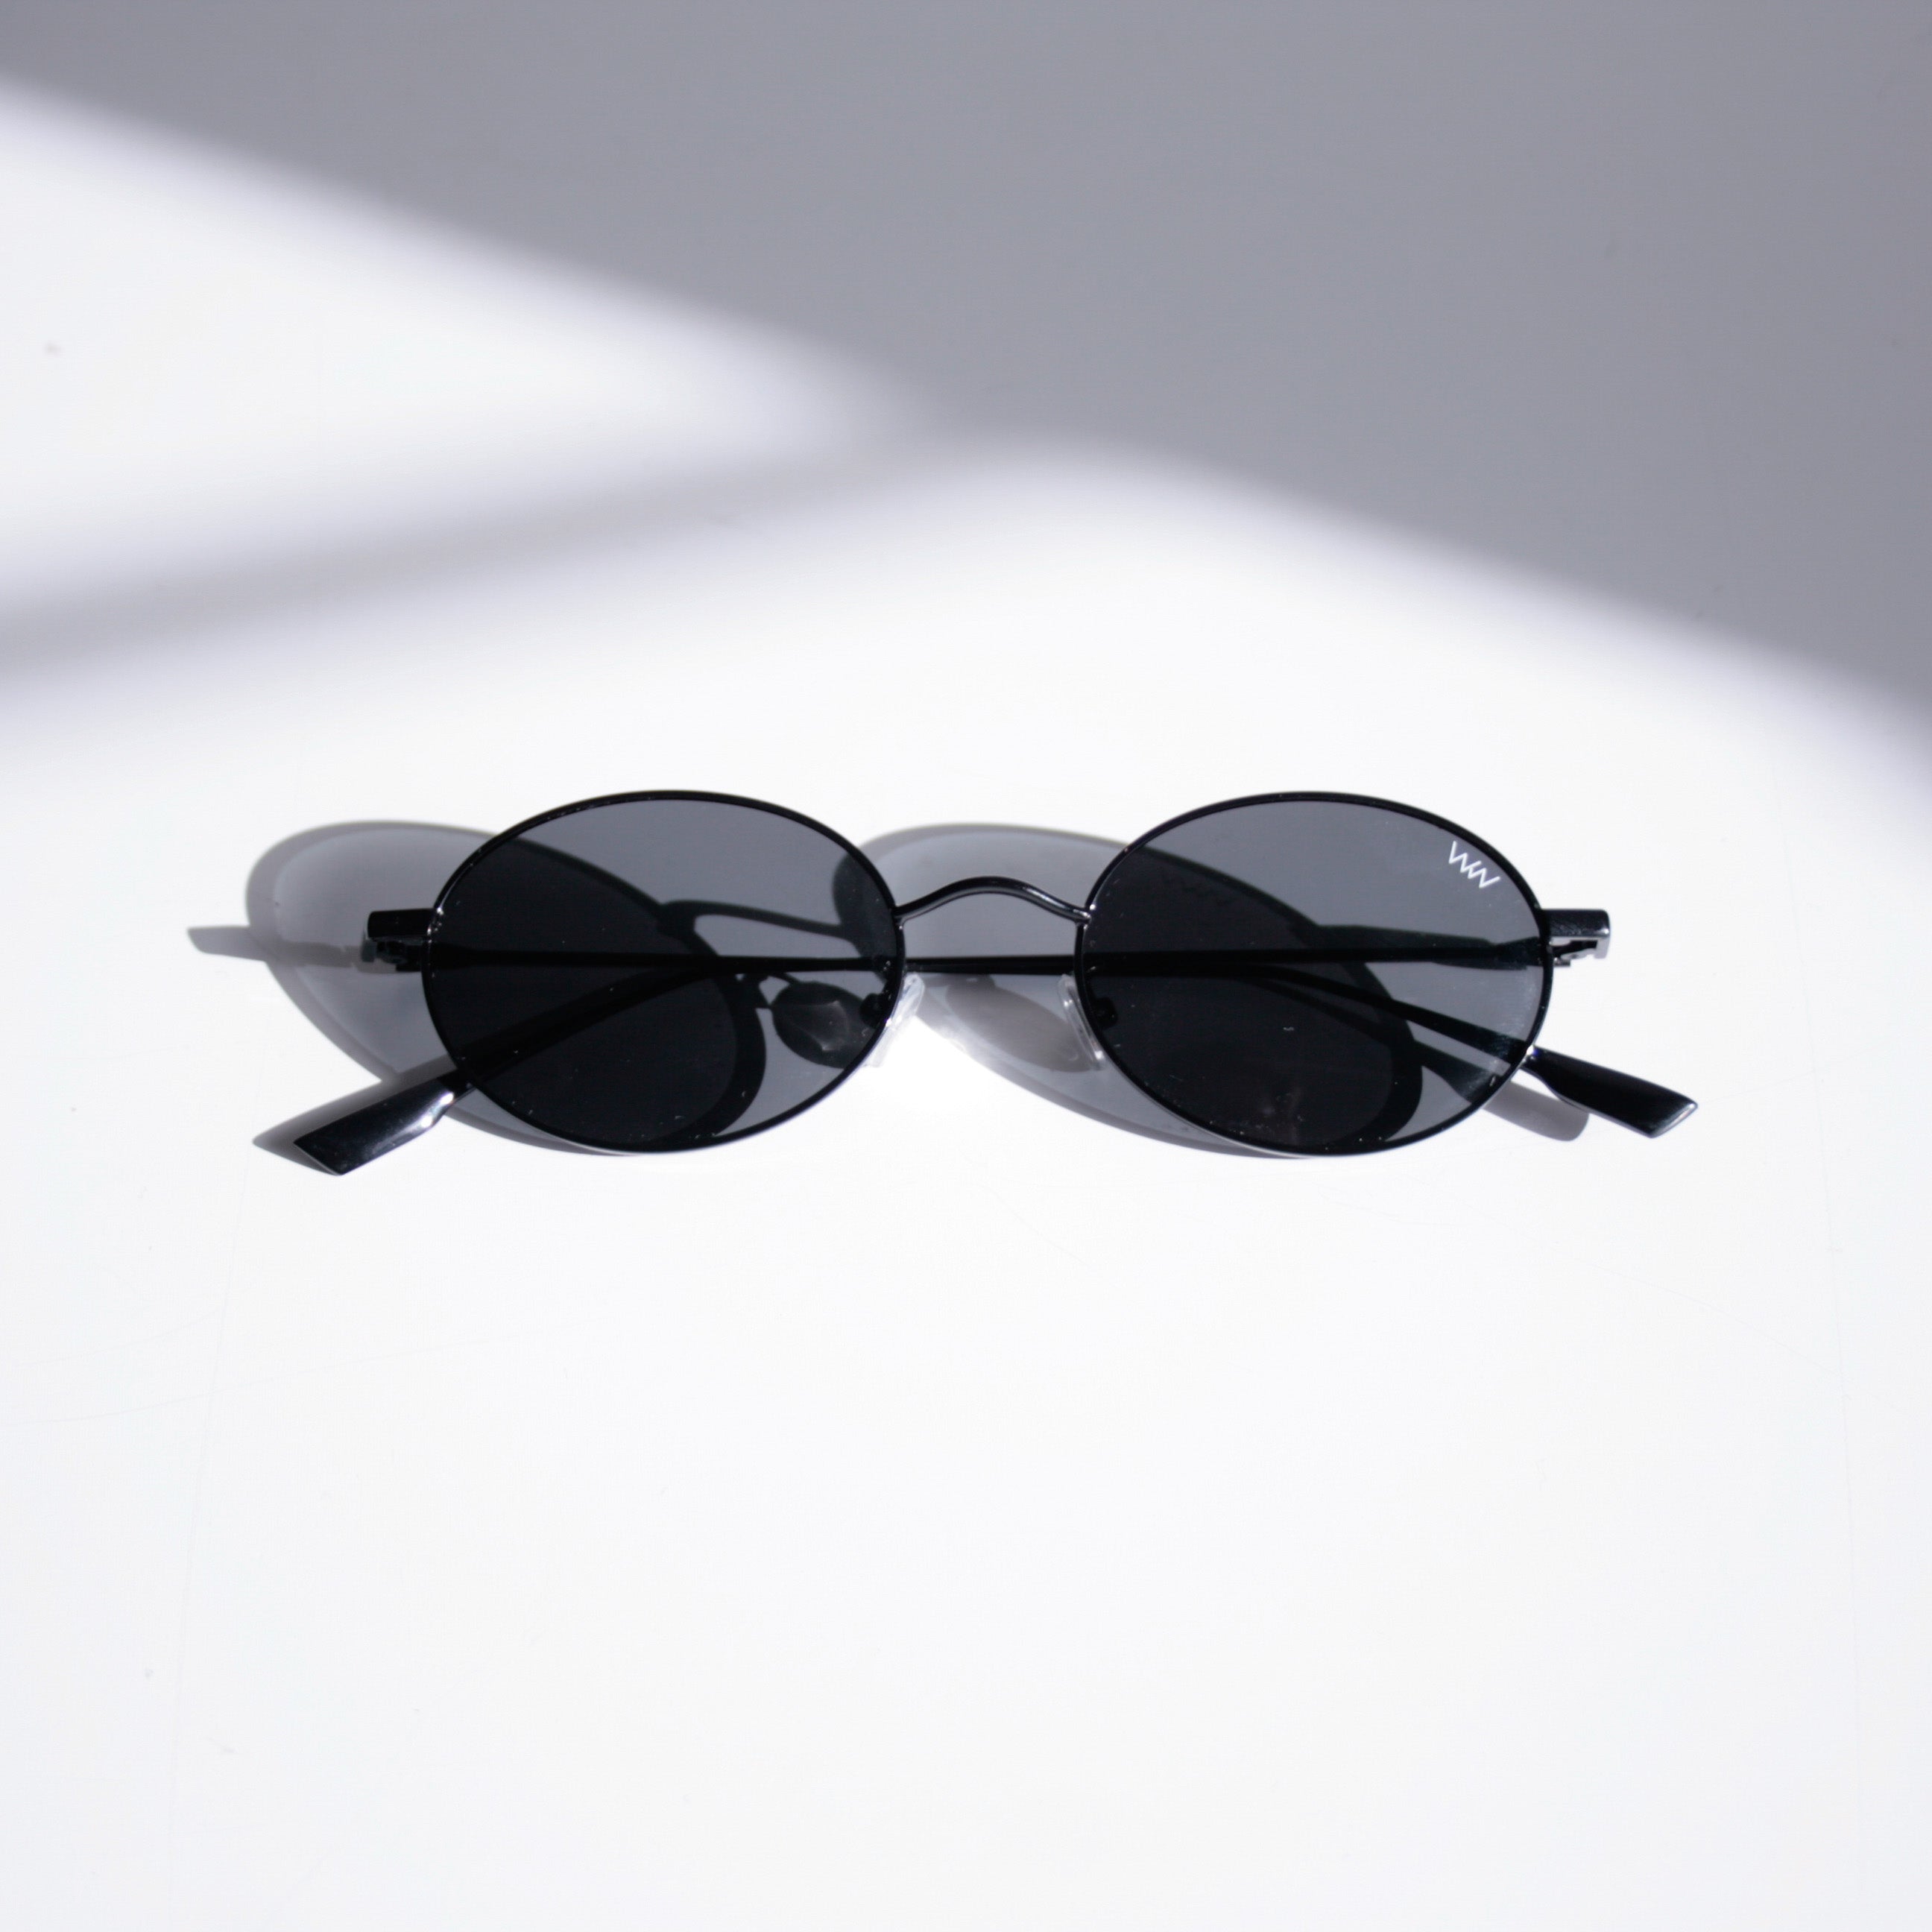 Wear Walters Urban - Metal frame sunglasses – Wear Walters Eyewear